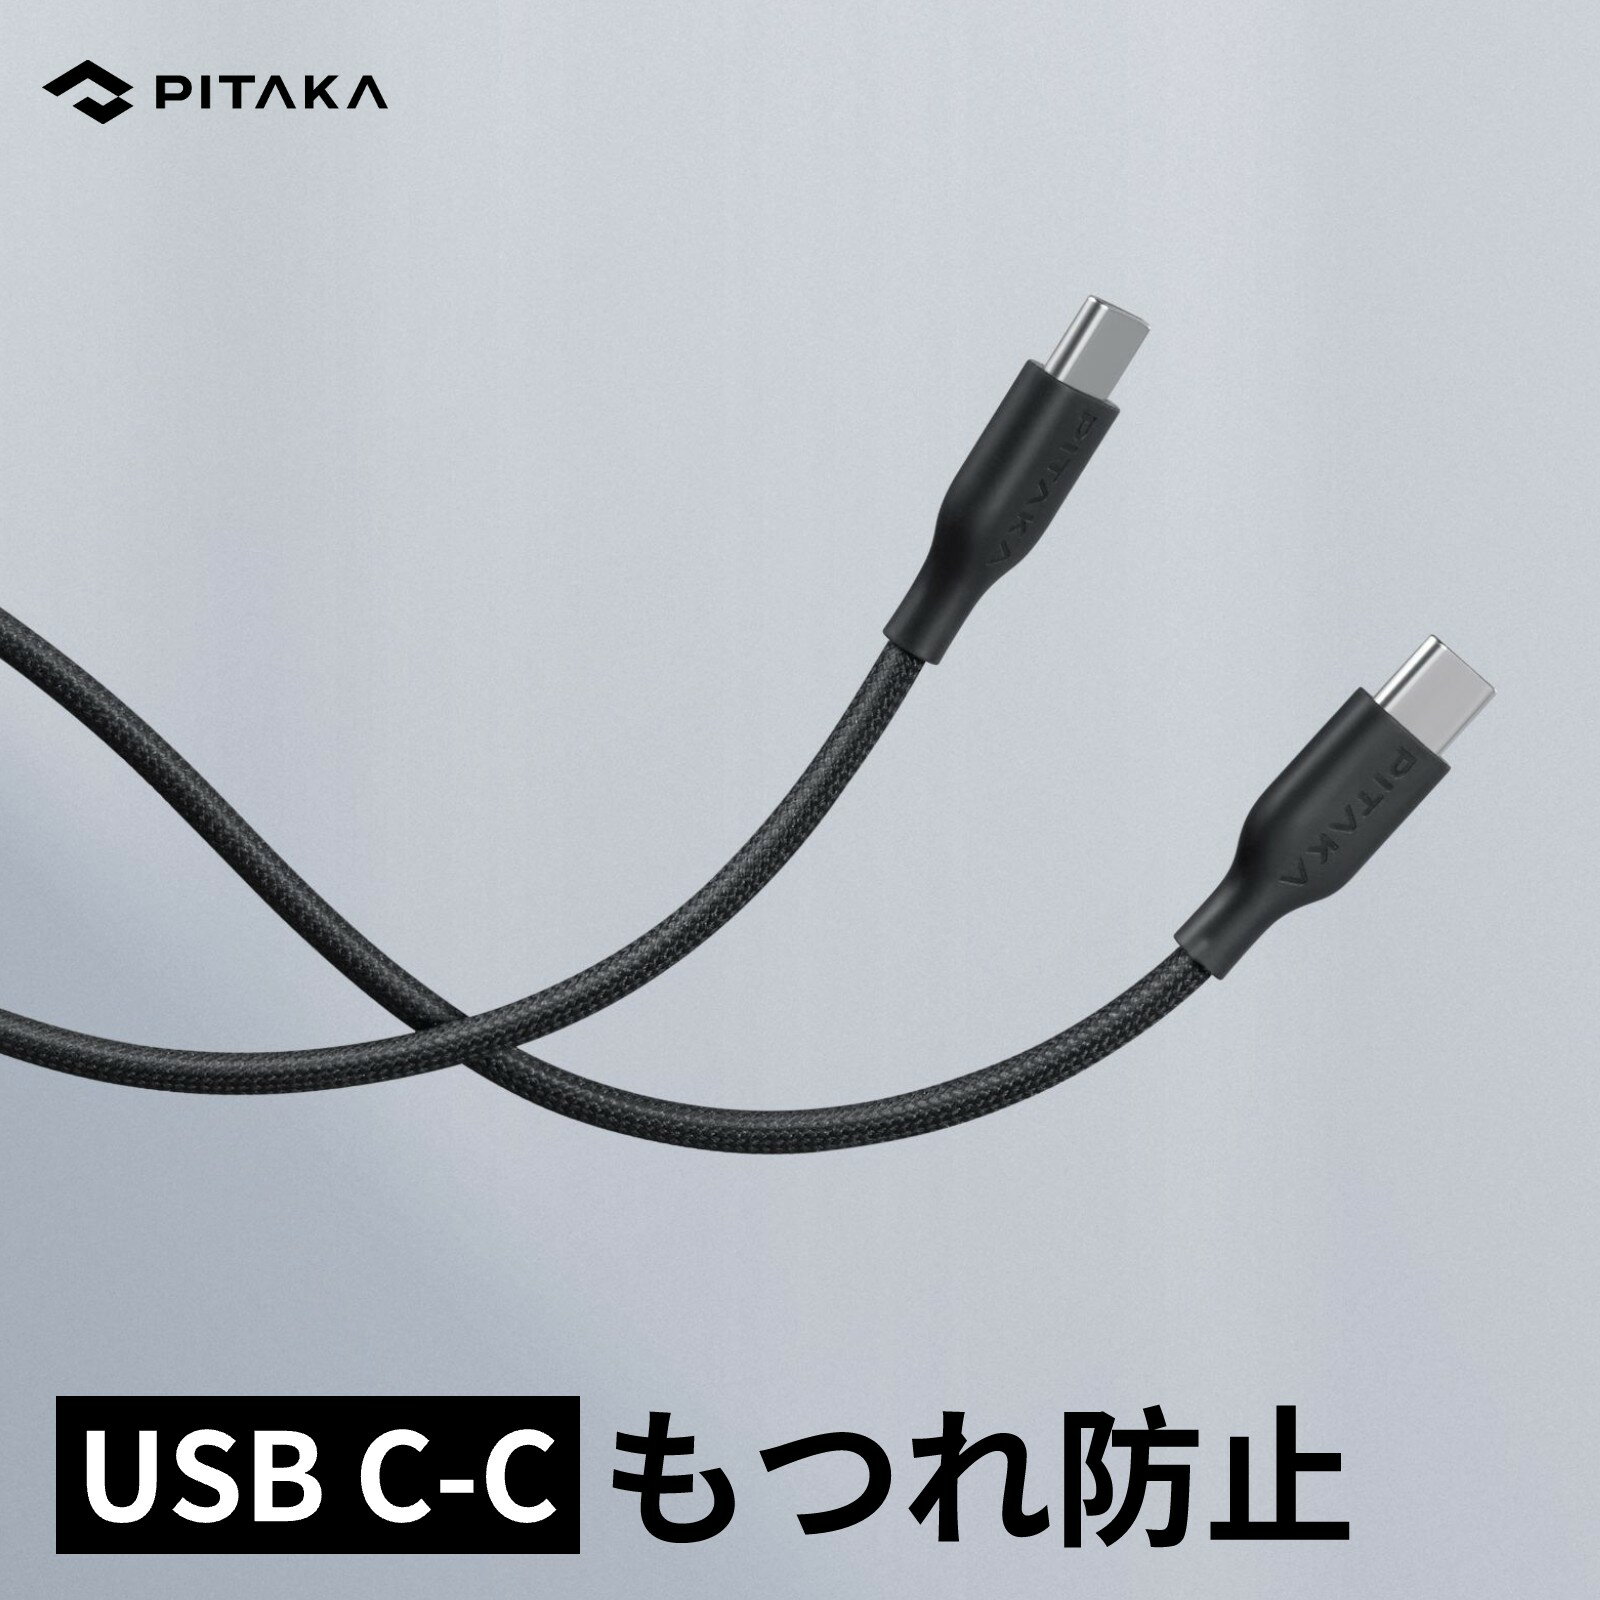 USB-C & USB-C ケーブル PD対応 PITAKA 公式 急速充電 アラミド繊維 Switch、4k TV、Galaxy S20、Xperia、Pixel、MacBook、iPad、Type-C 機器 対応 ブラック ホワイト